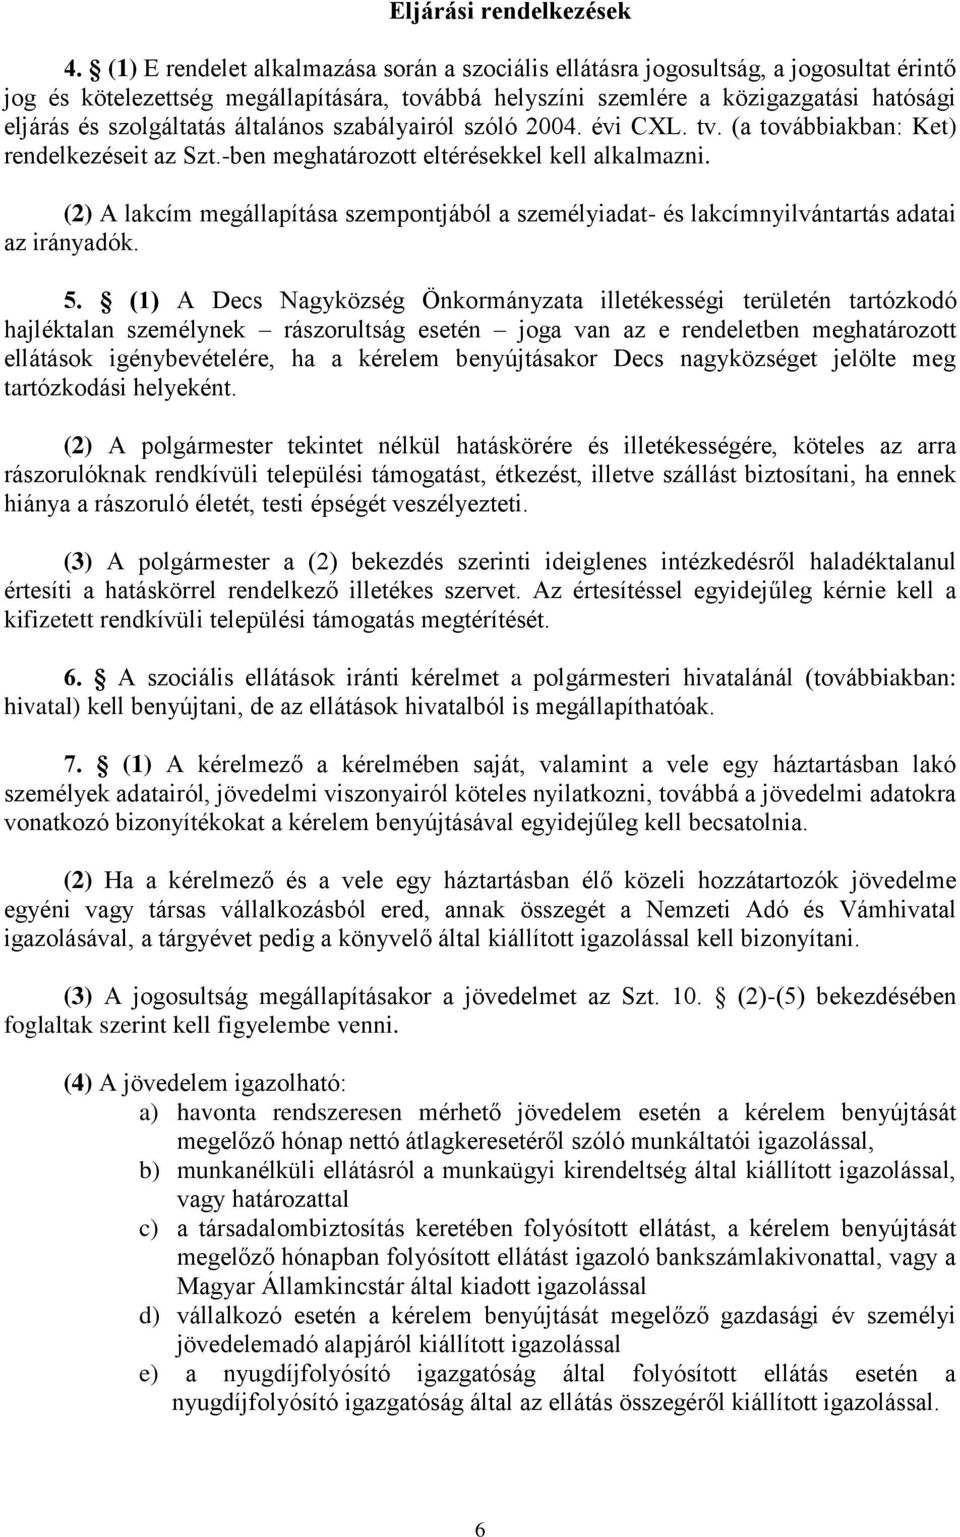 szolgáltatás általános szabályairól szóló 2004. évi CXL. tv. (a továbbiakban: Ket) rendelkezéseit az Szt.-ben meghatározott eltérésekkel kell alkalmazni.